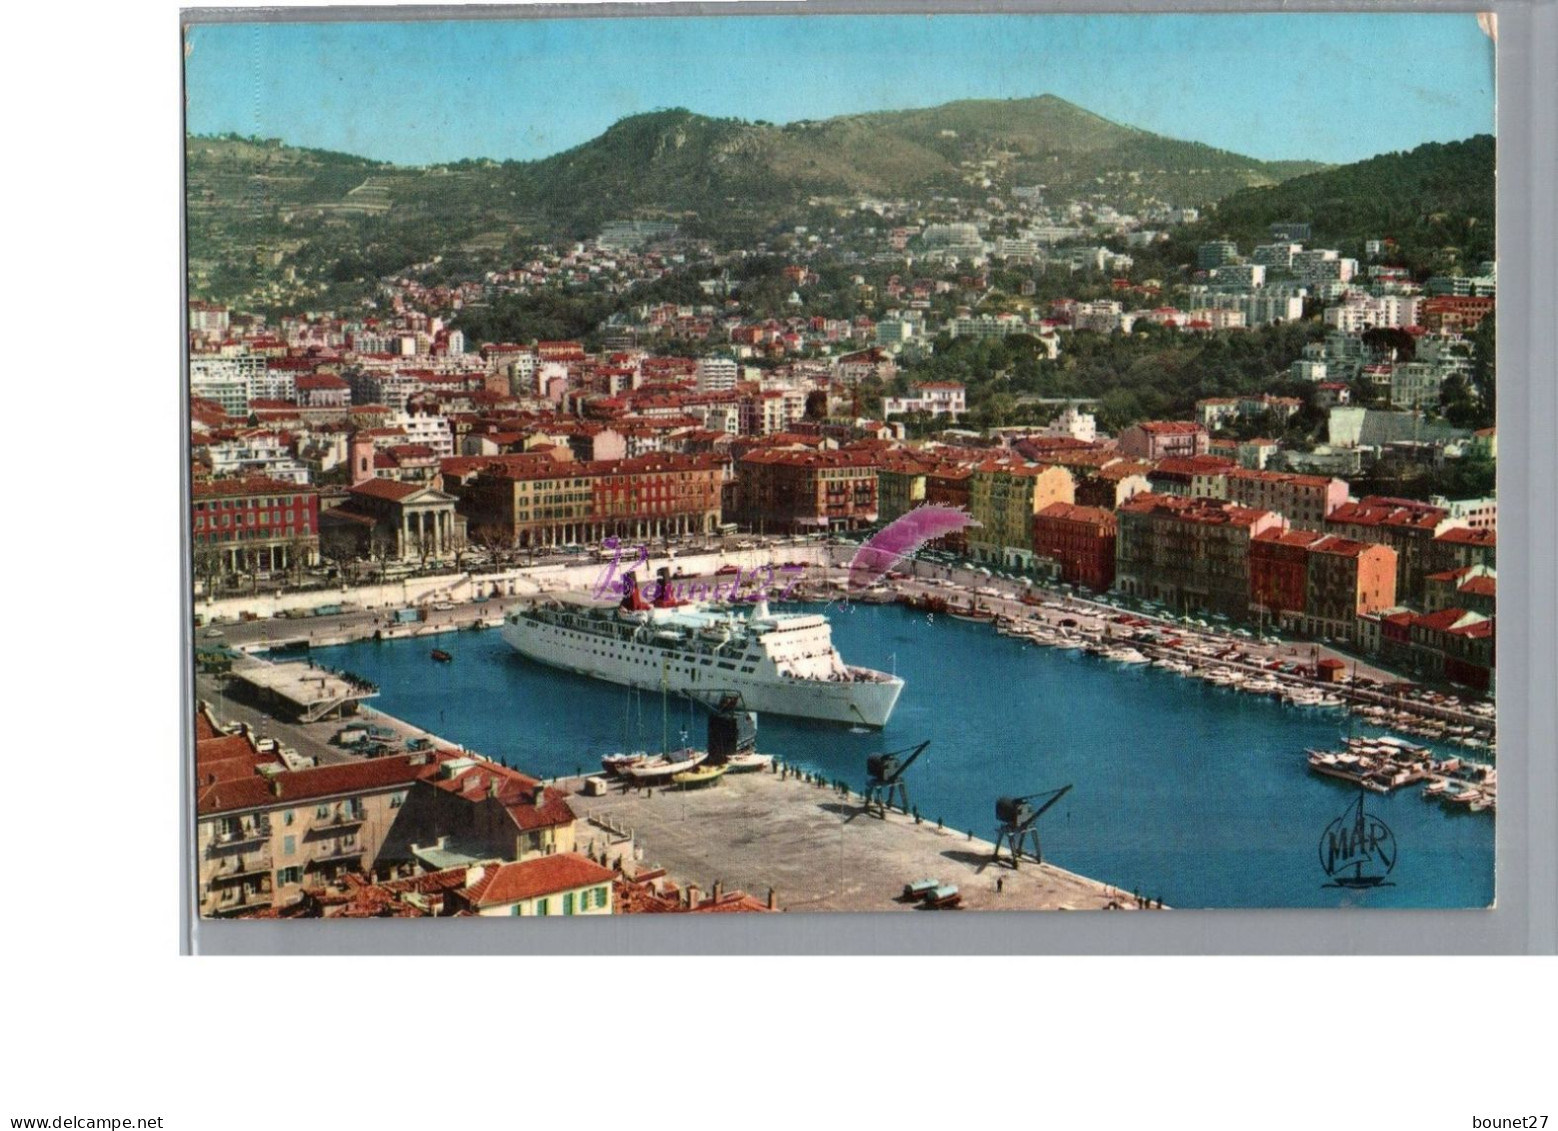 NICE 06 - Vue Générale Sur Le Port Avec Un Gros Paquebot à Quai - Life In The Old Town (Vieux Nice)